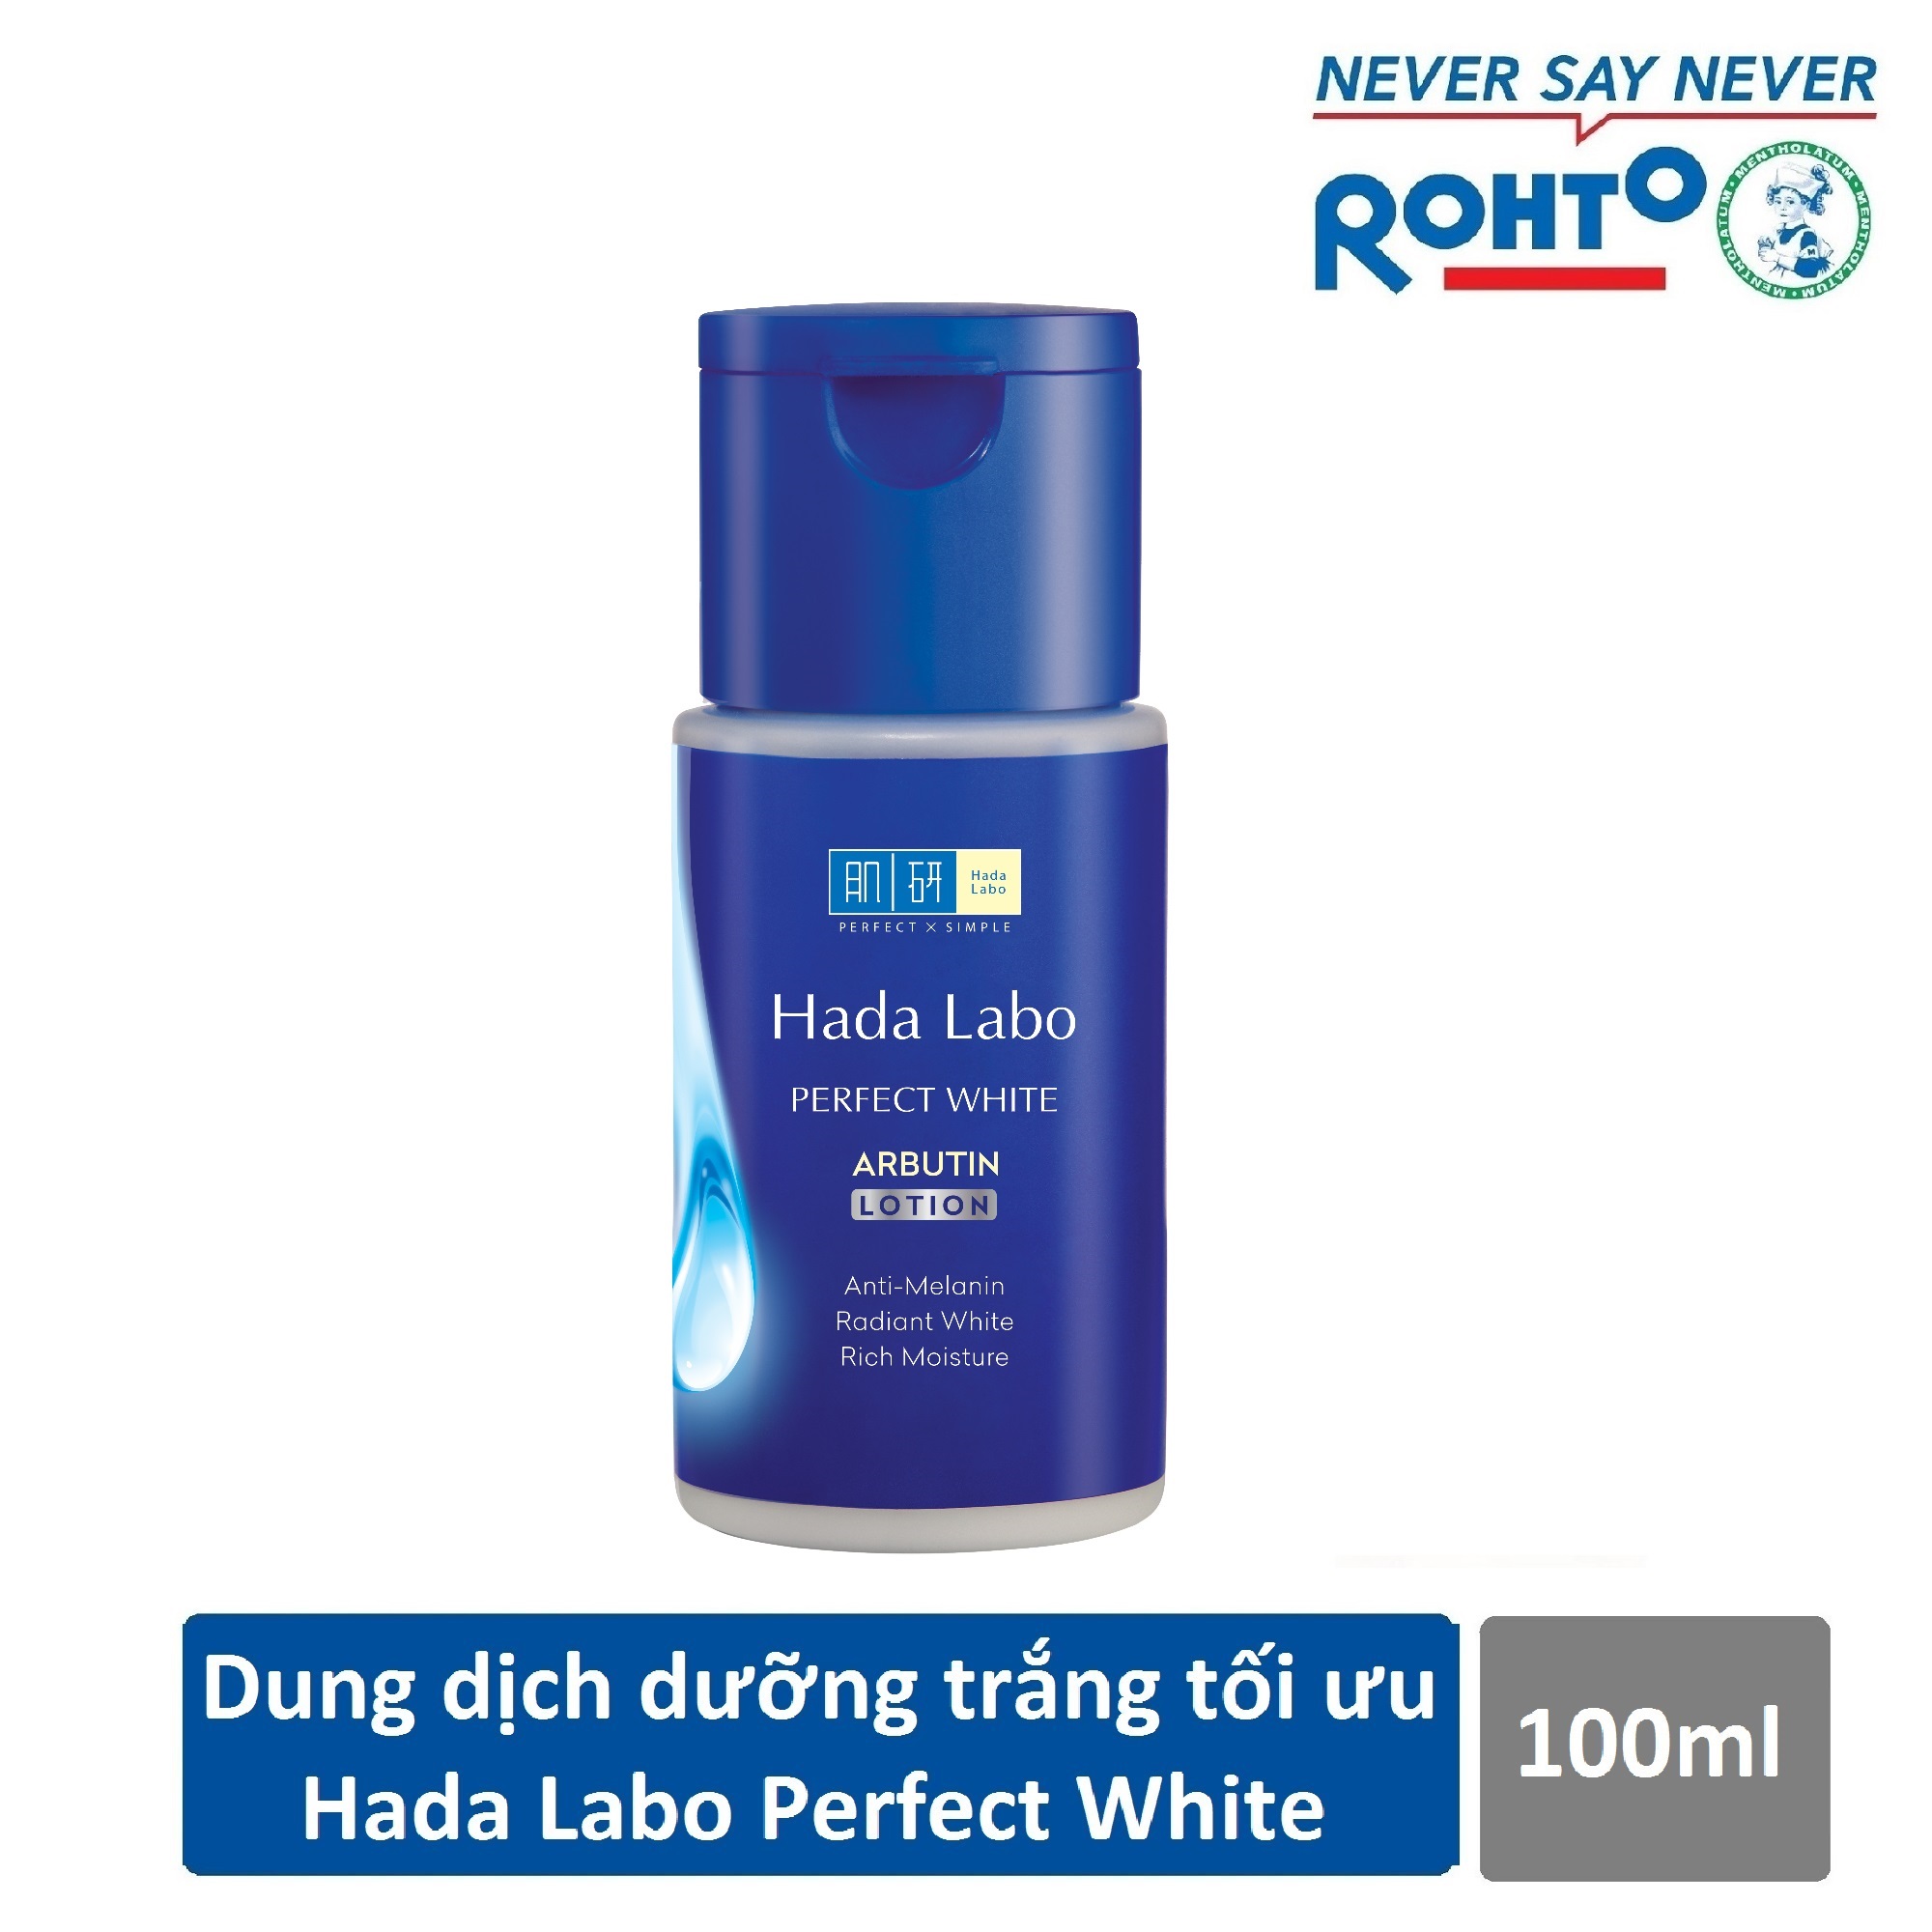 Dung dịch dưỡng trắng da tối ưu Hada Labo Perfect White Lotion 100ml